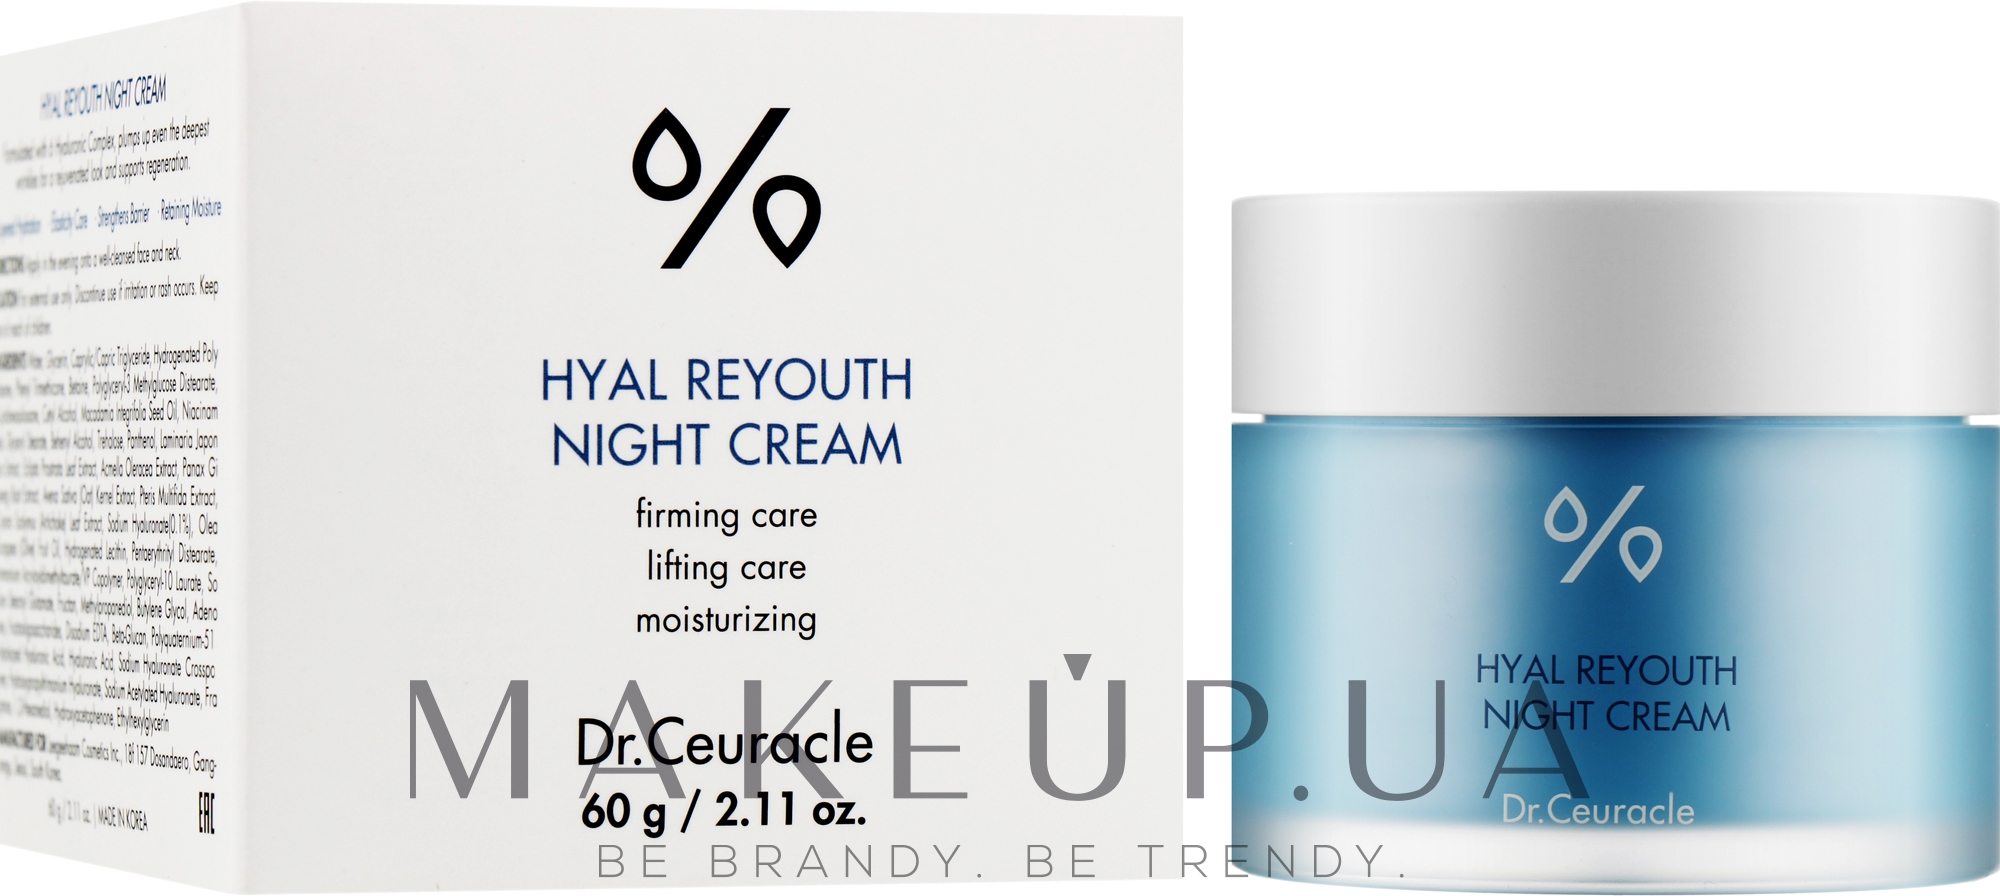 Увлажняющий ночной крем-маска для лица - Dr.Ceuracle Hyal Reyouth Night Cream  — фото 60g